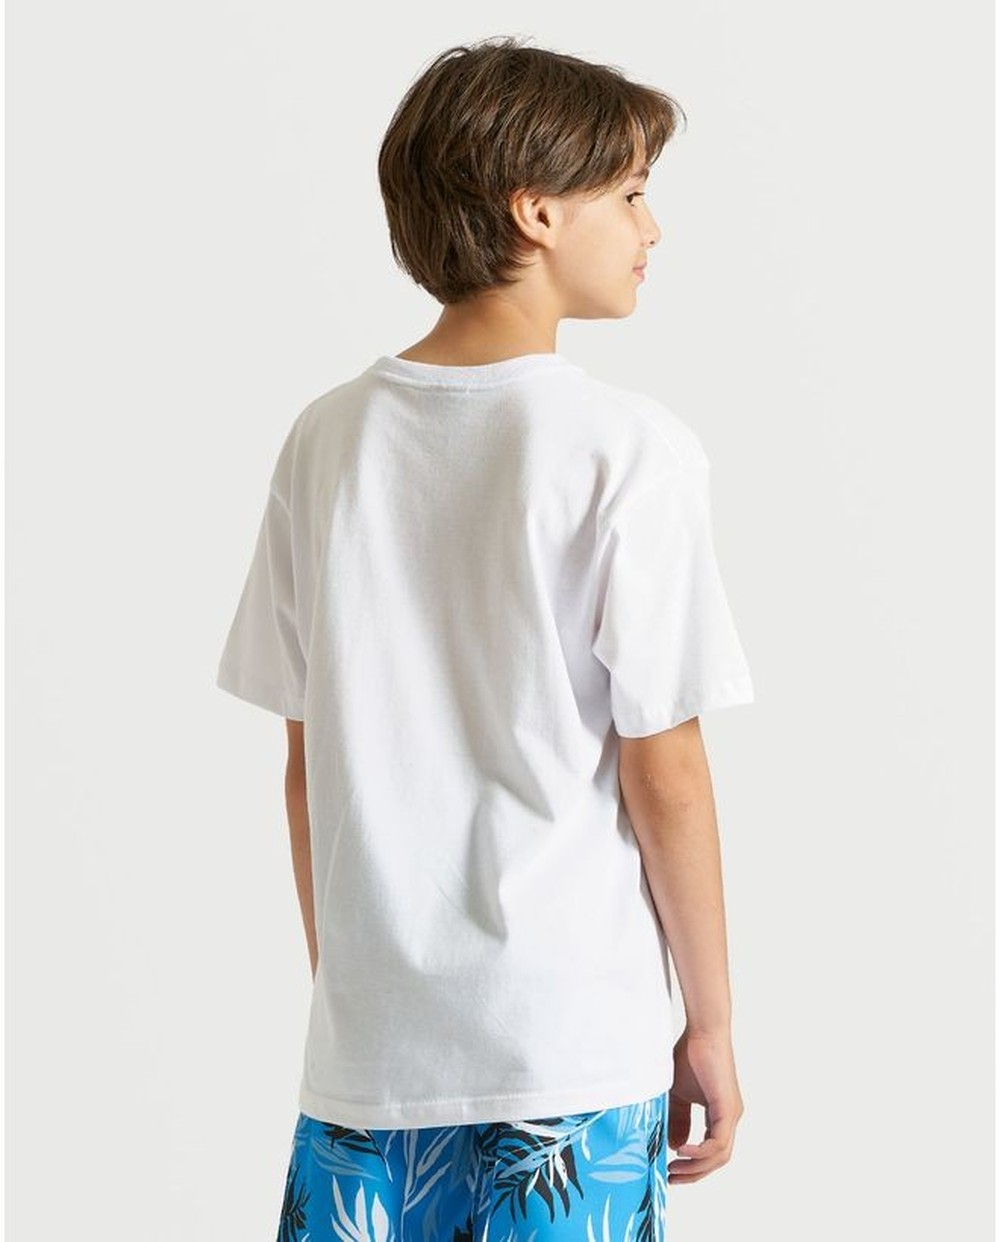 Camiseta Volcom Crisp Stone Juvenil Branca